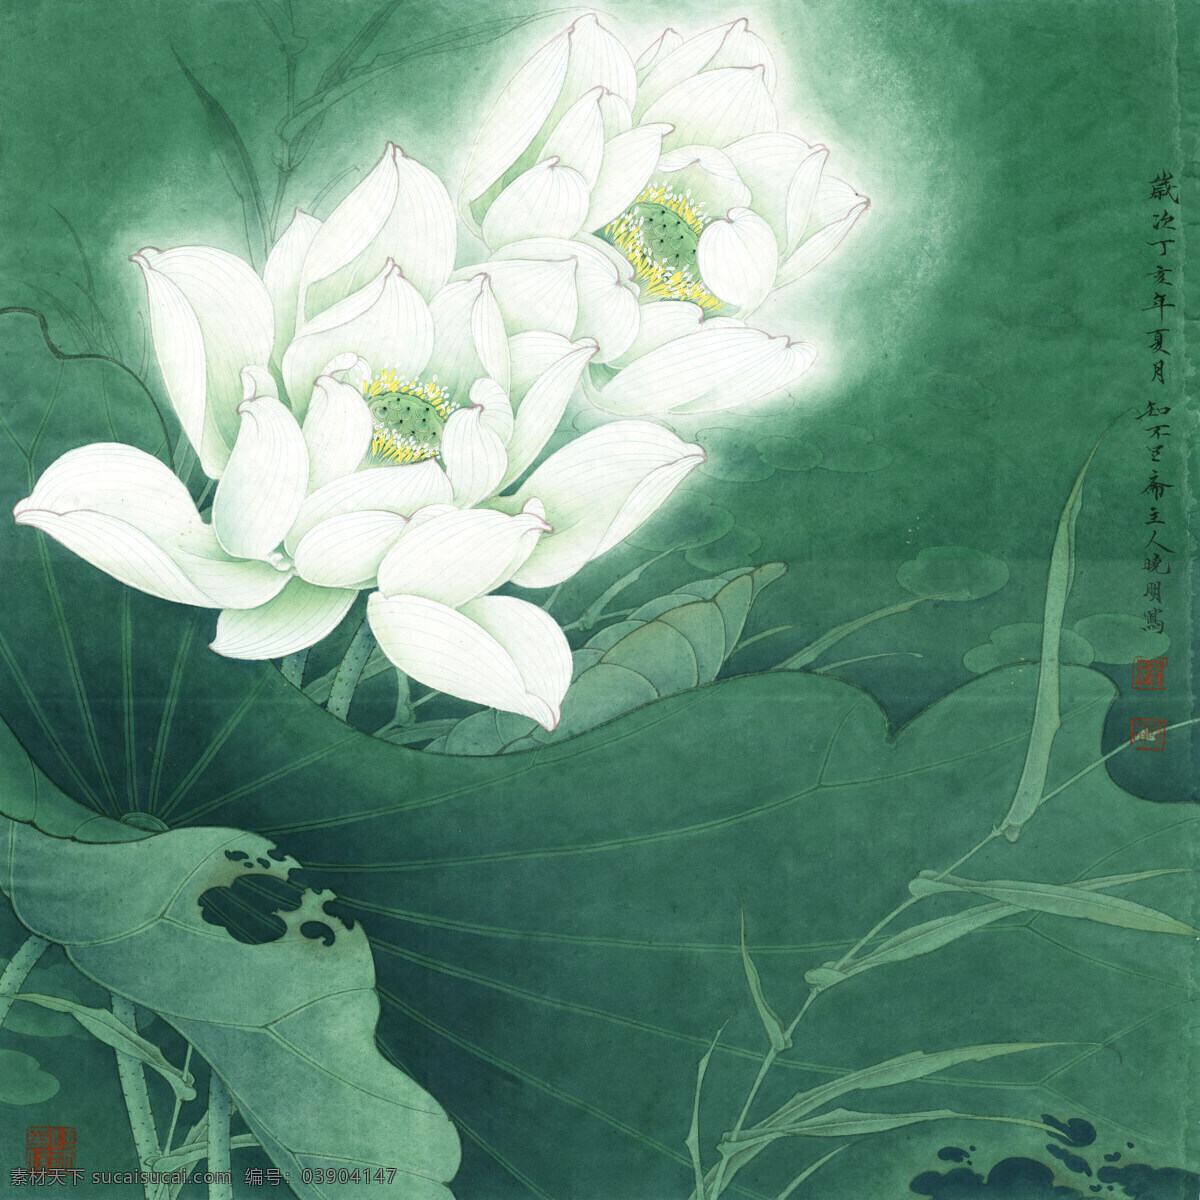 圣洁之花 花鸟画 设计素材 花鸟画篇 中国画篇 书画美术 白色